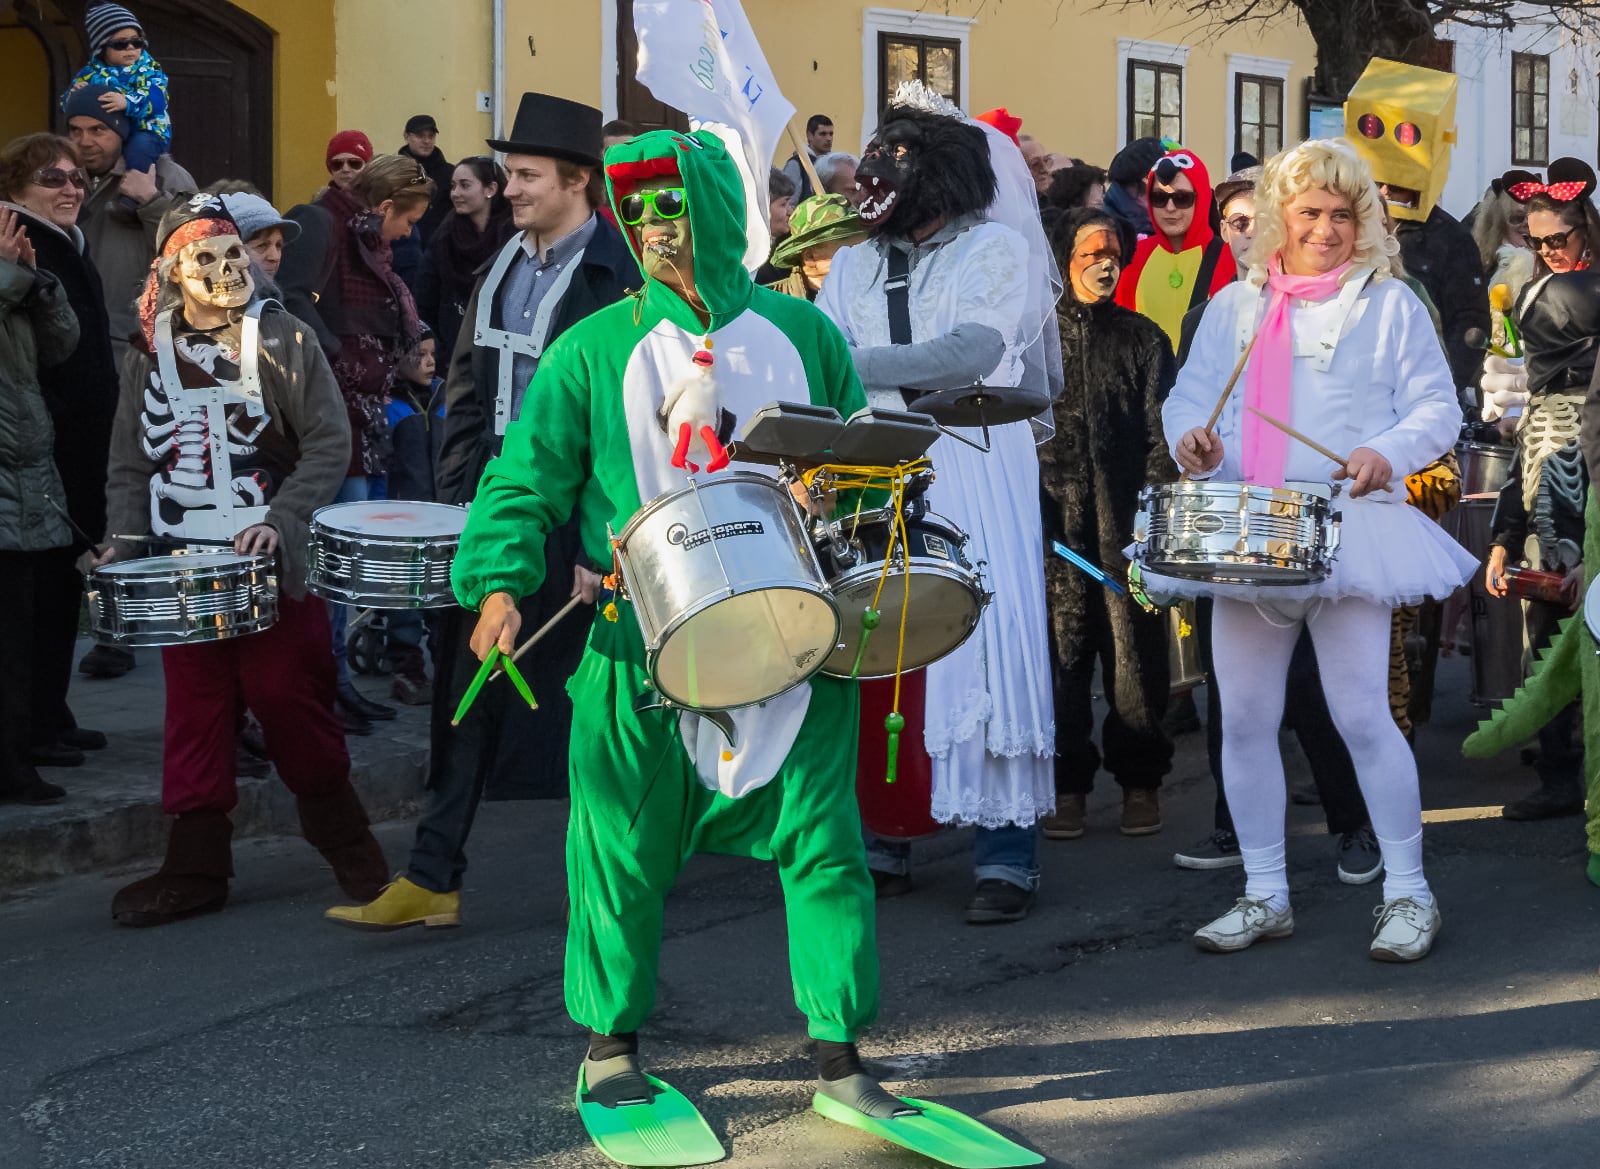 Aberhunderte Maskierte werden am Samstag in Keszthely erwartet